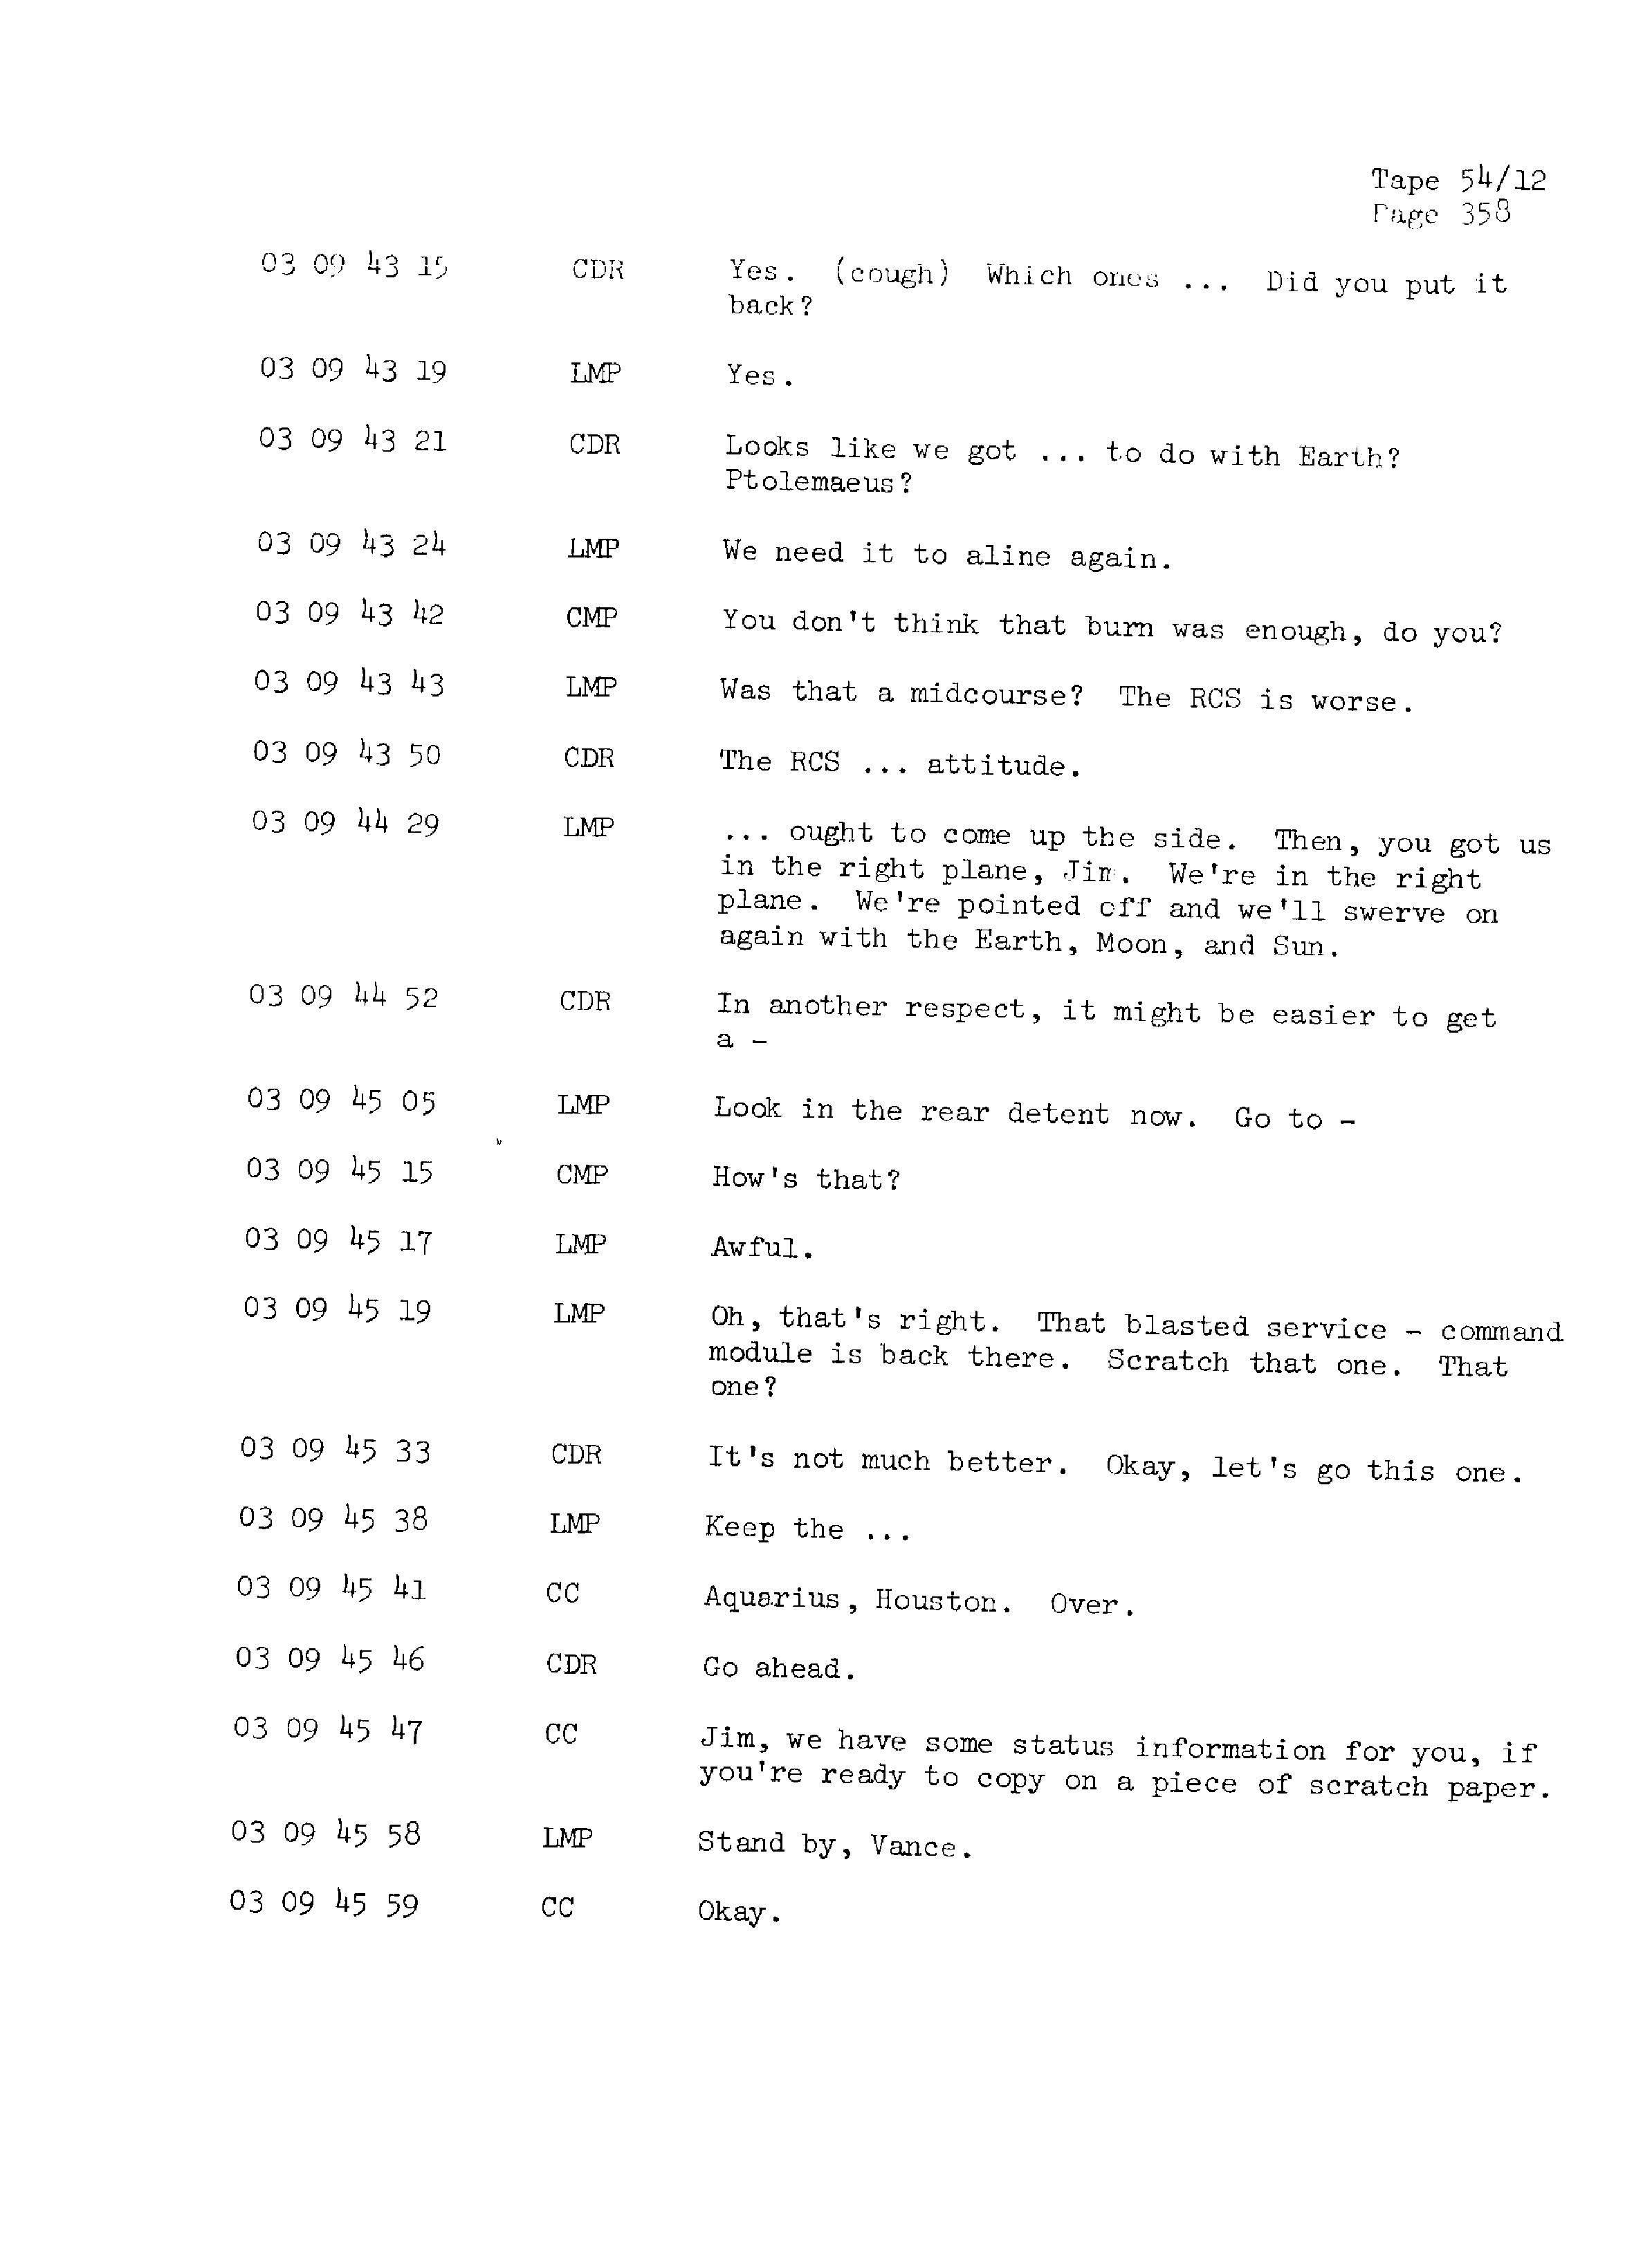 Page 365 of Apollo 13’s original transcript